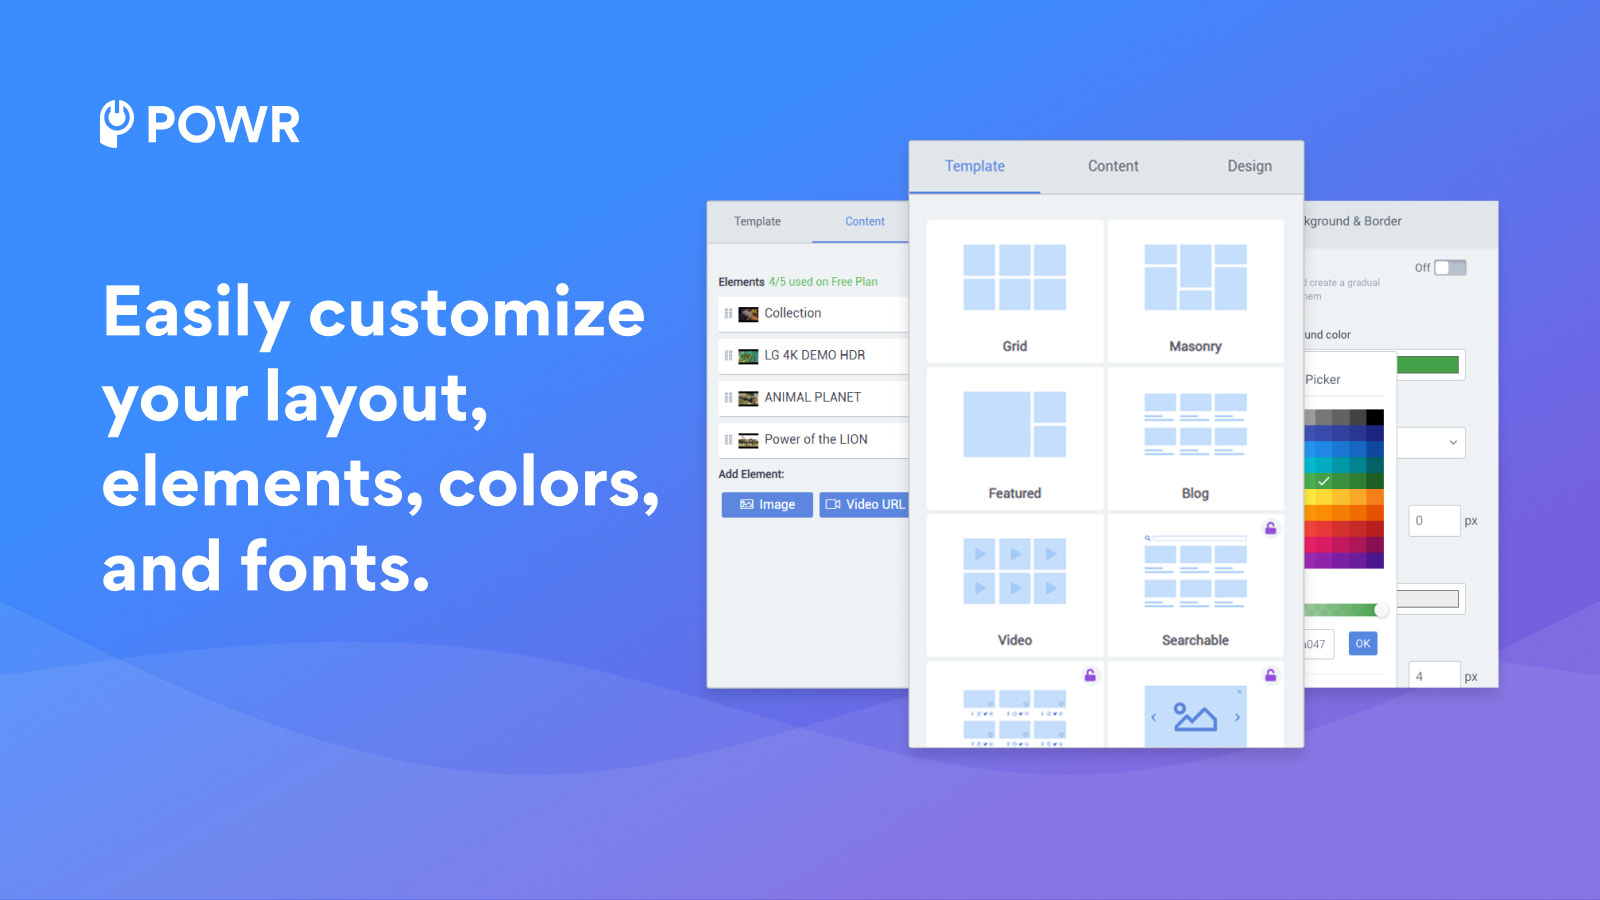 Anpassa enkelt din layout, element, färger och typsnitt.